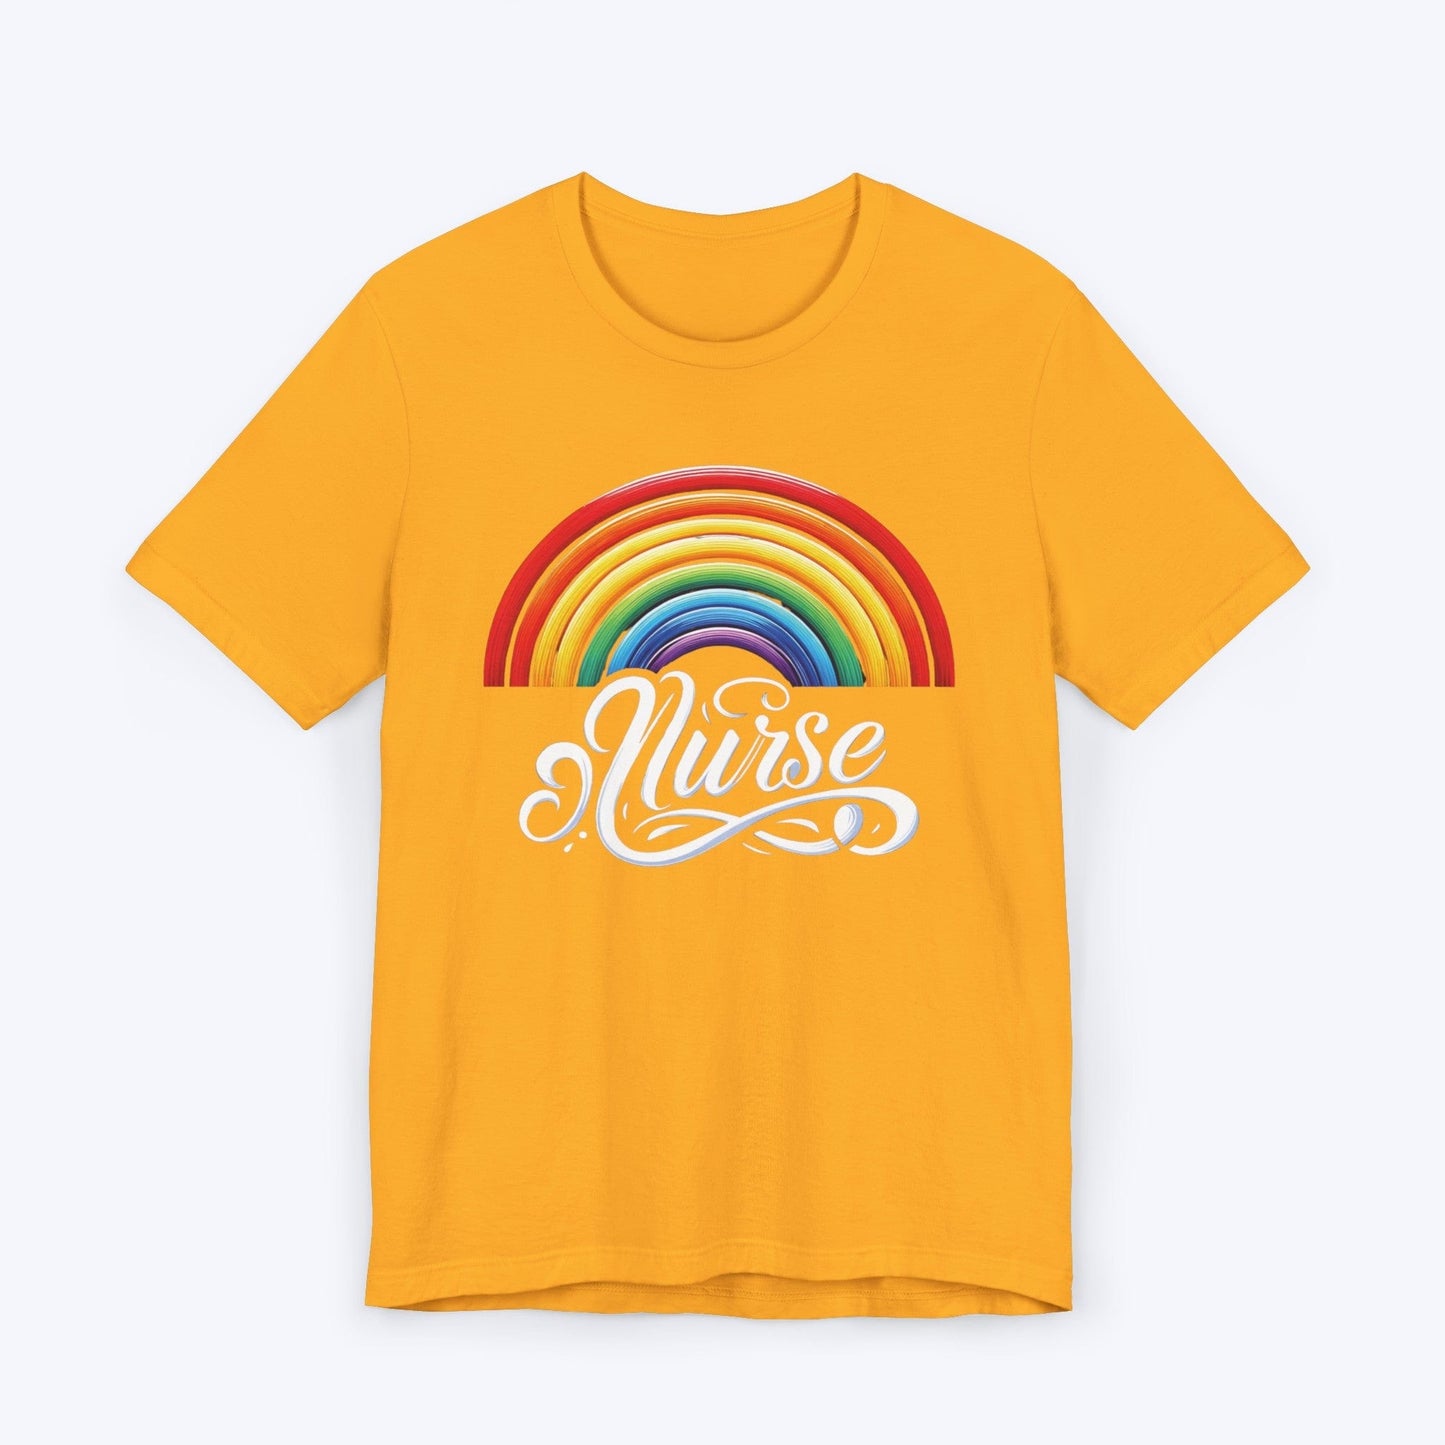 T-Shirt Gold / S Spectrum of Compassion: Nurse Pride T-shirt